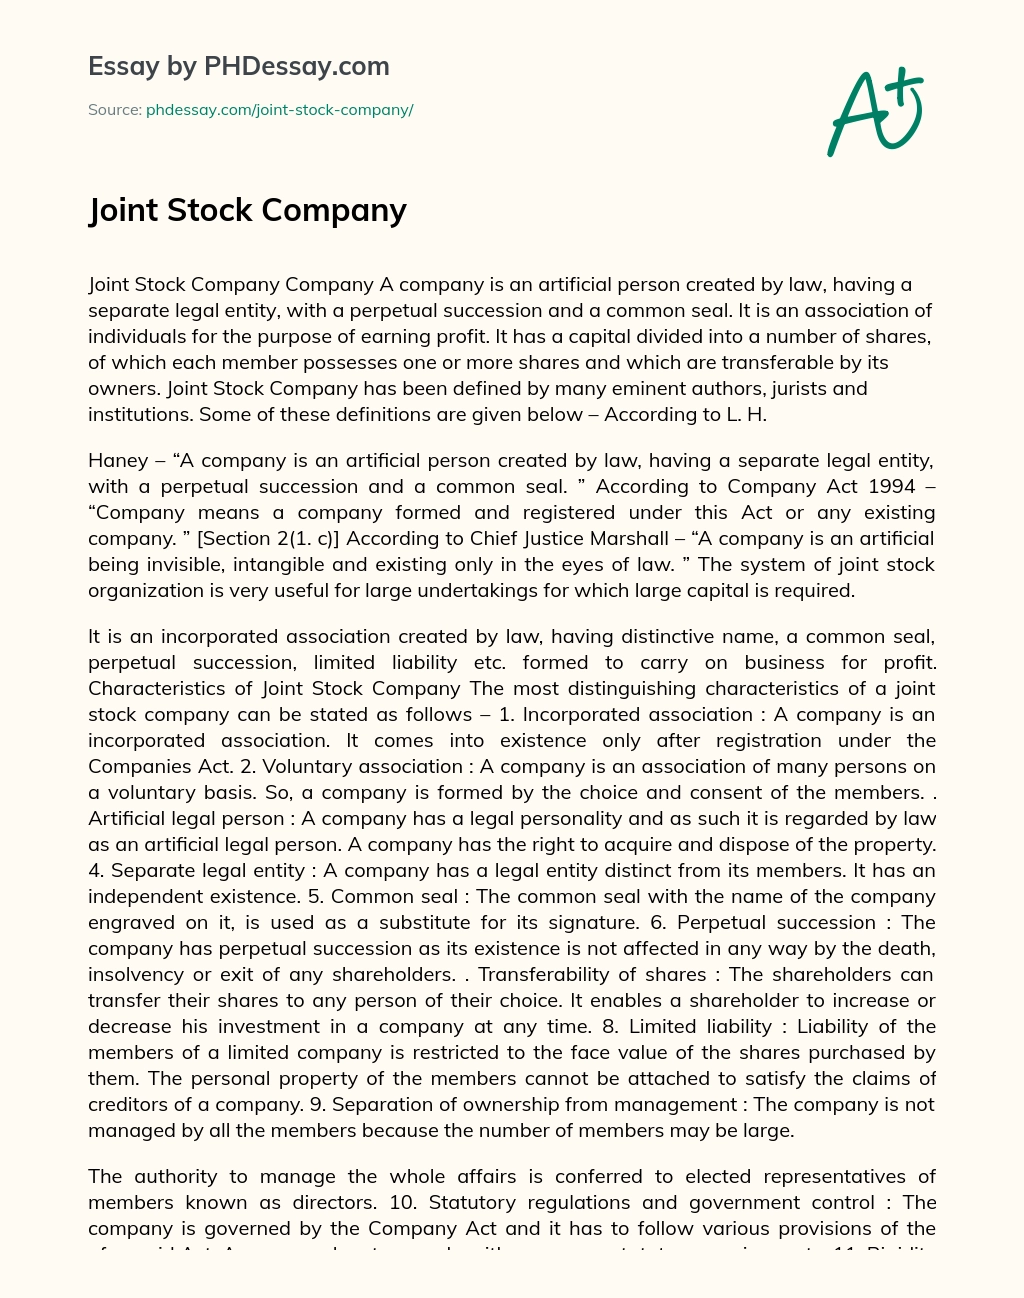 Joint Stock Company essay